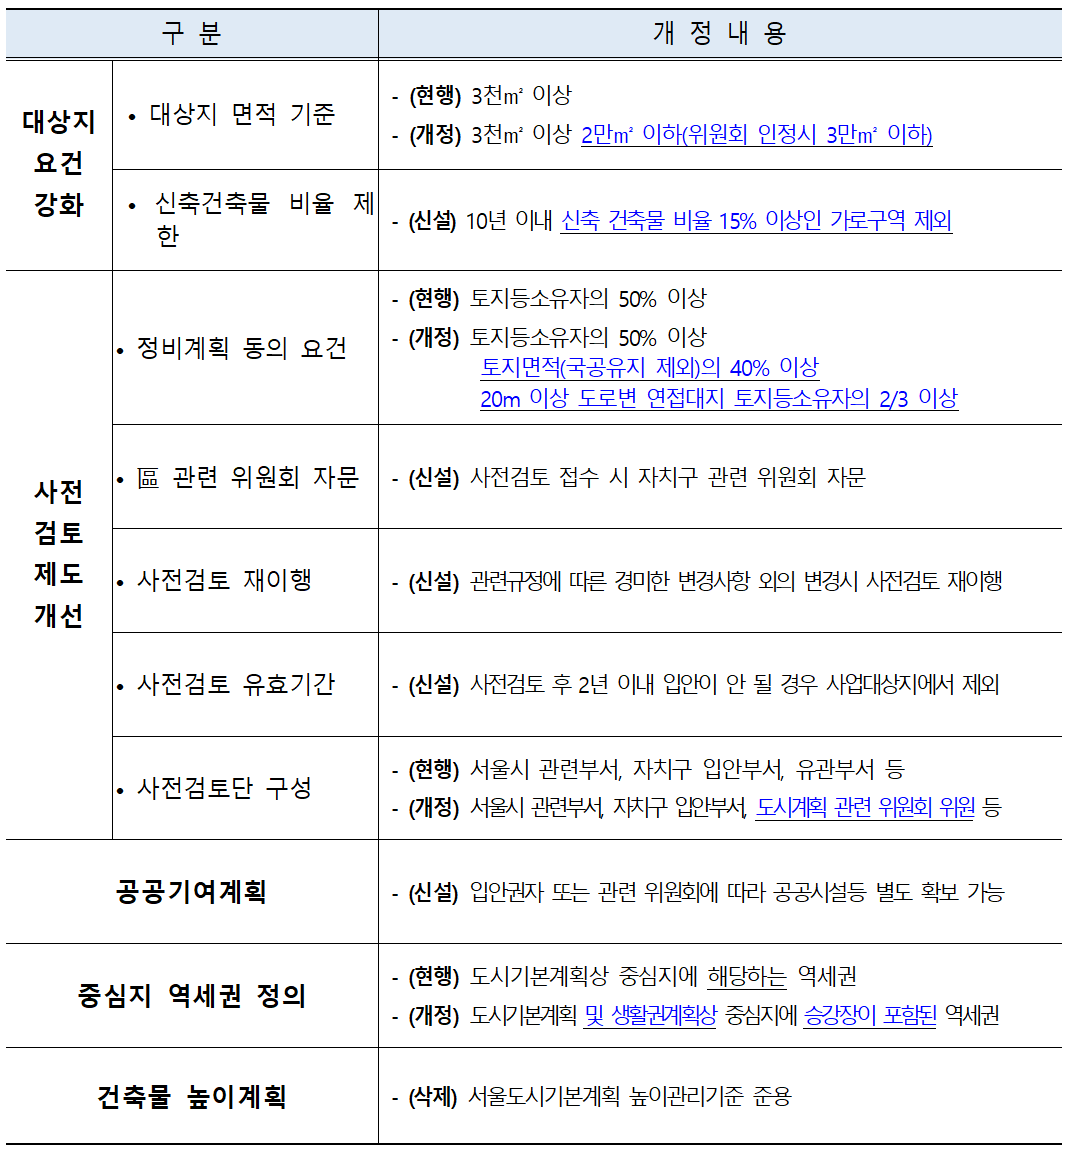 역세권장기전세주택 운영기준 개정 요약표(자료:서울시)